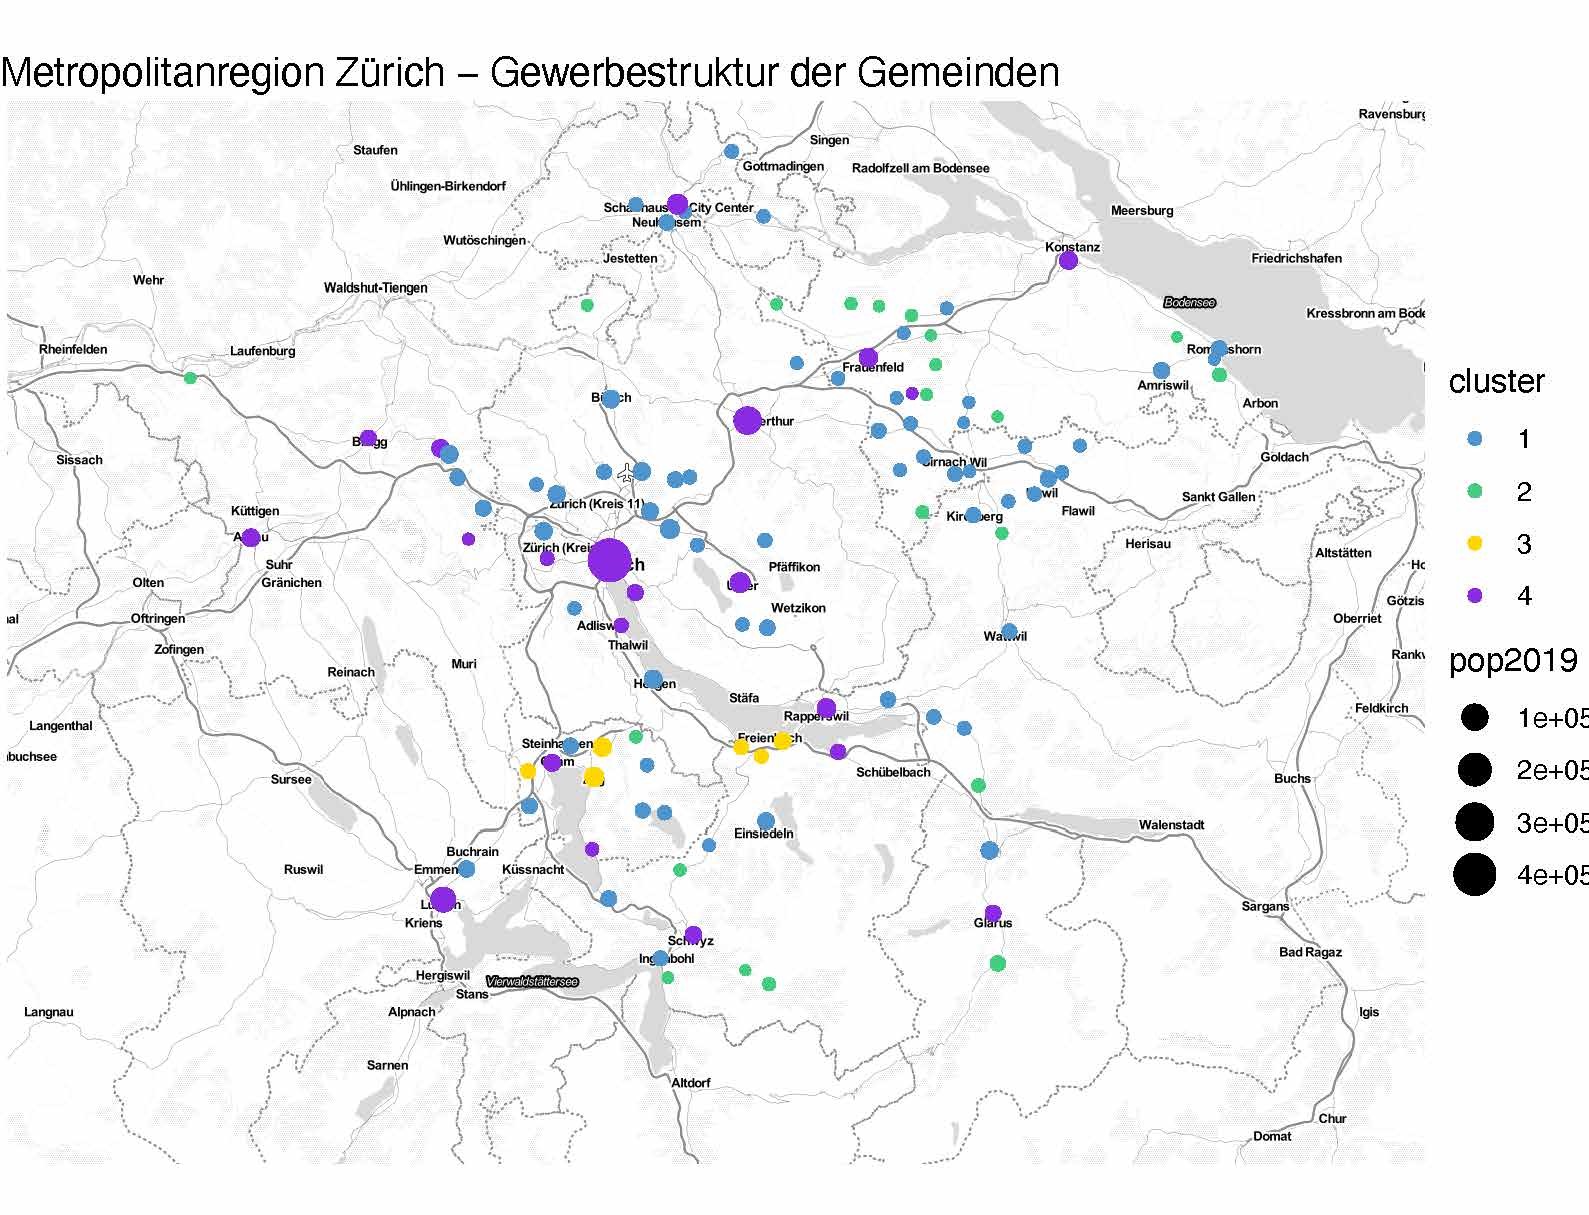 Enlarged view: Metropolitanregion Zürich - Gewerbestruktur der Gemeinden